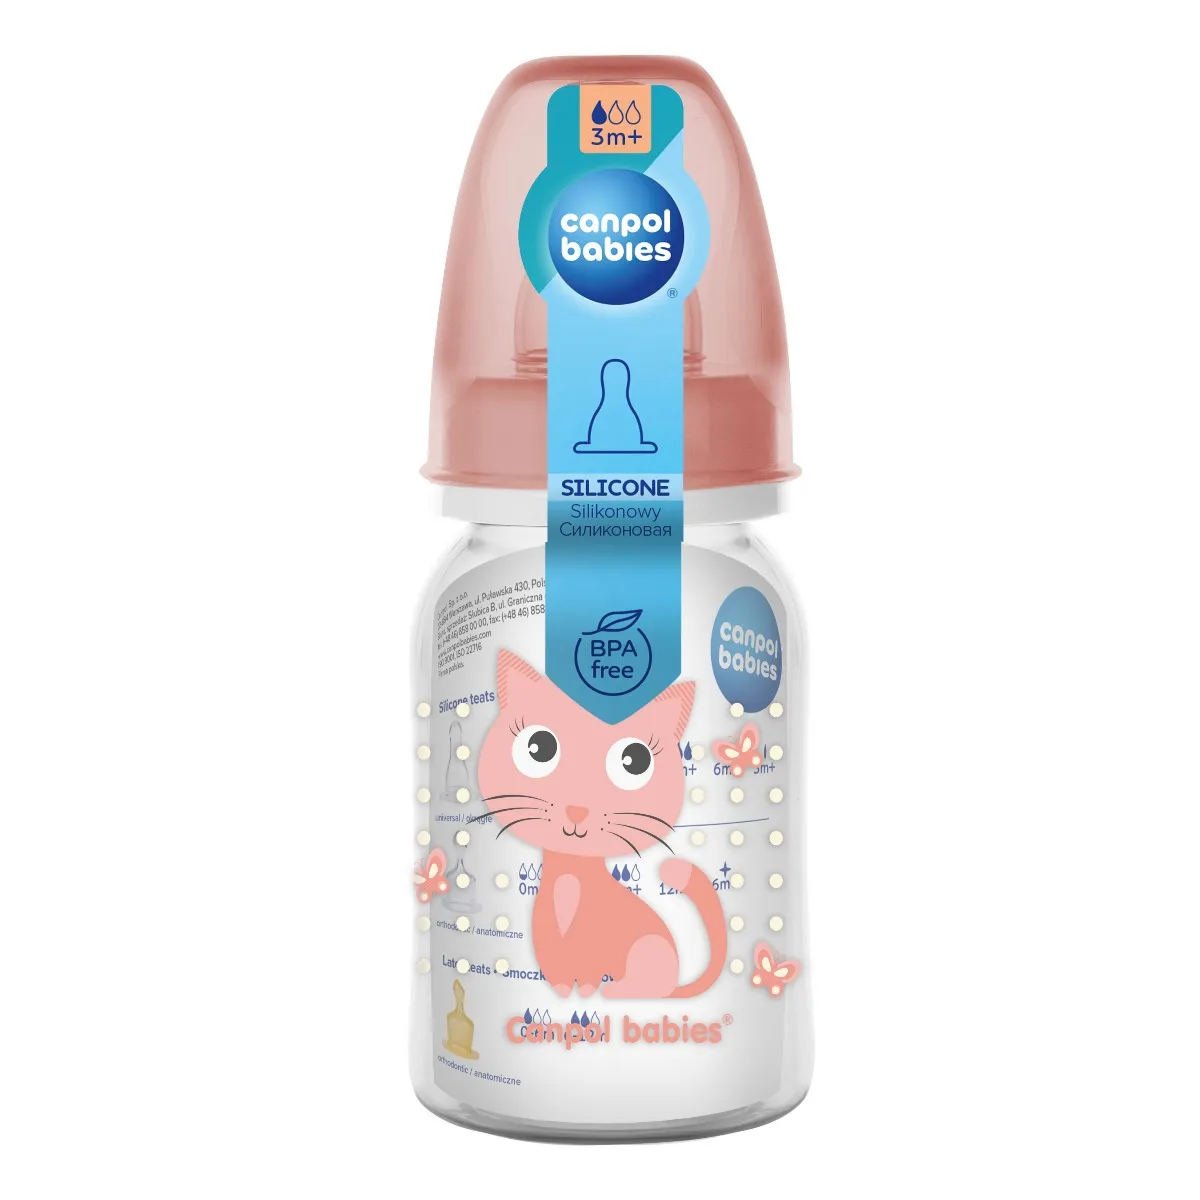 Canpol babies Cute Animals wąska butelka ze smoczkiem dla dzieci 0 m+, 1 szt. 